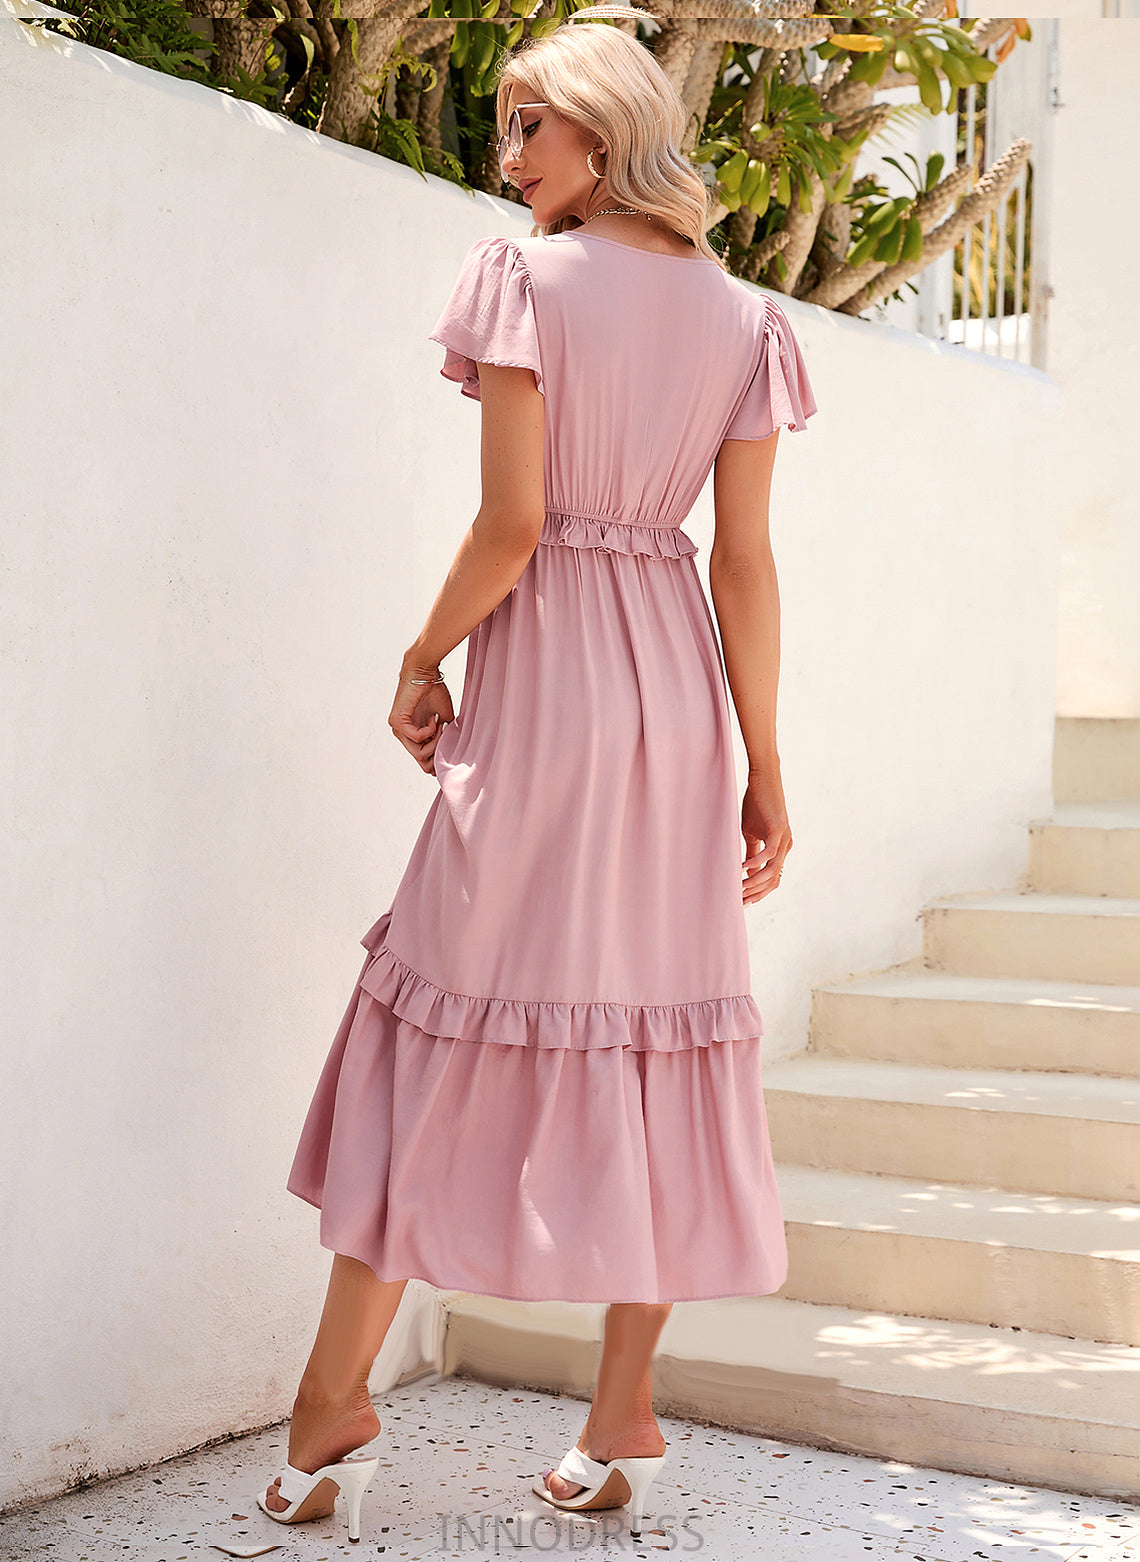 Fabric Length V-neck Polyester Tea-Length Neckline Straps Silhouette A-Line Perla A-Line/Princess Short Sleeves Bridesmaid Dresses